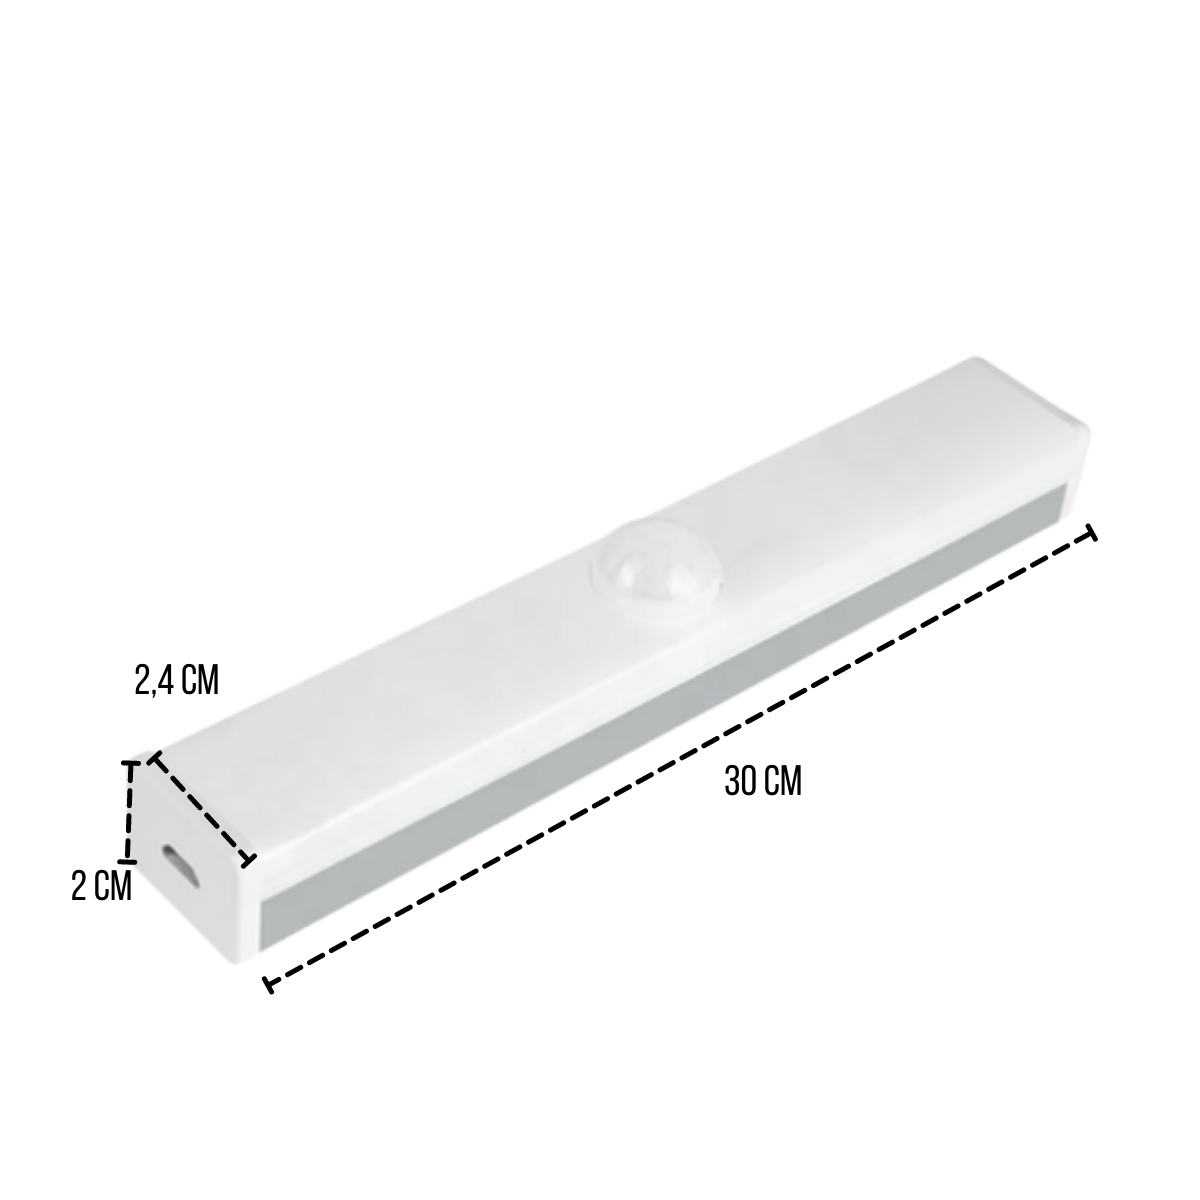 Luminária Barra Led Sobrepor Branco de 30CM Com Sensor de Movimento USB Para Armários Closets Nichos - 4